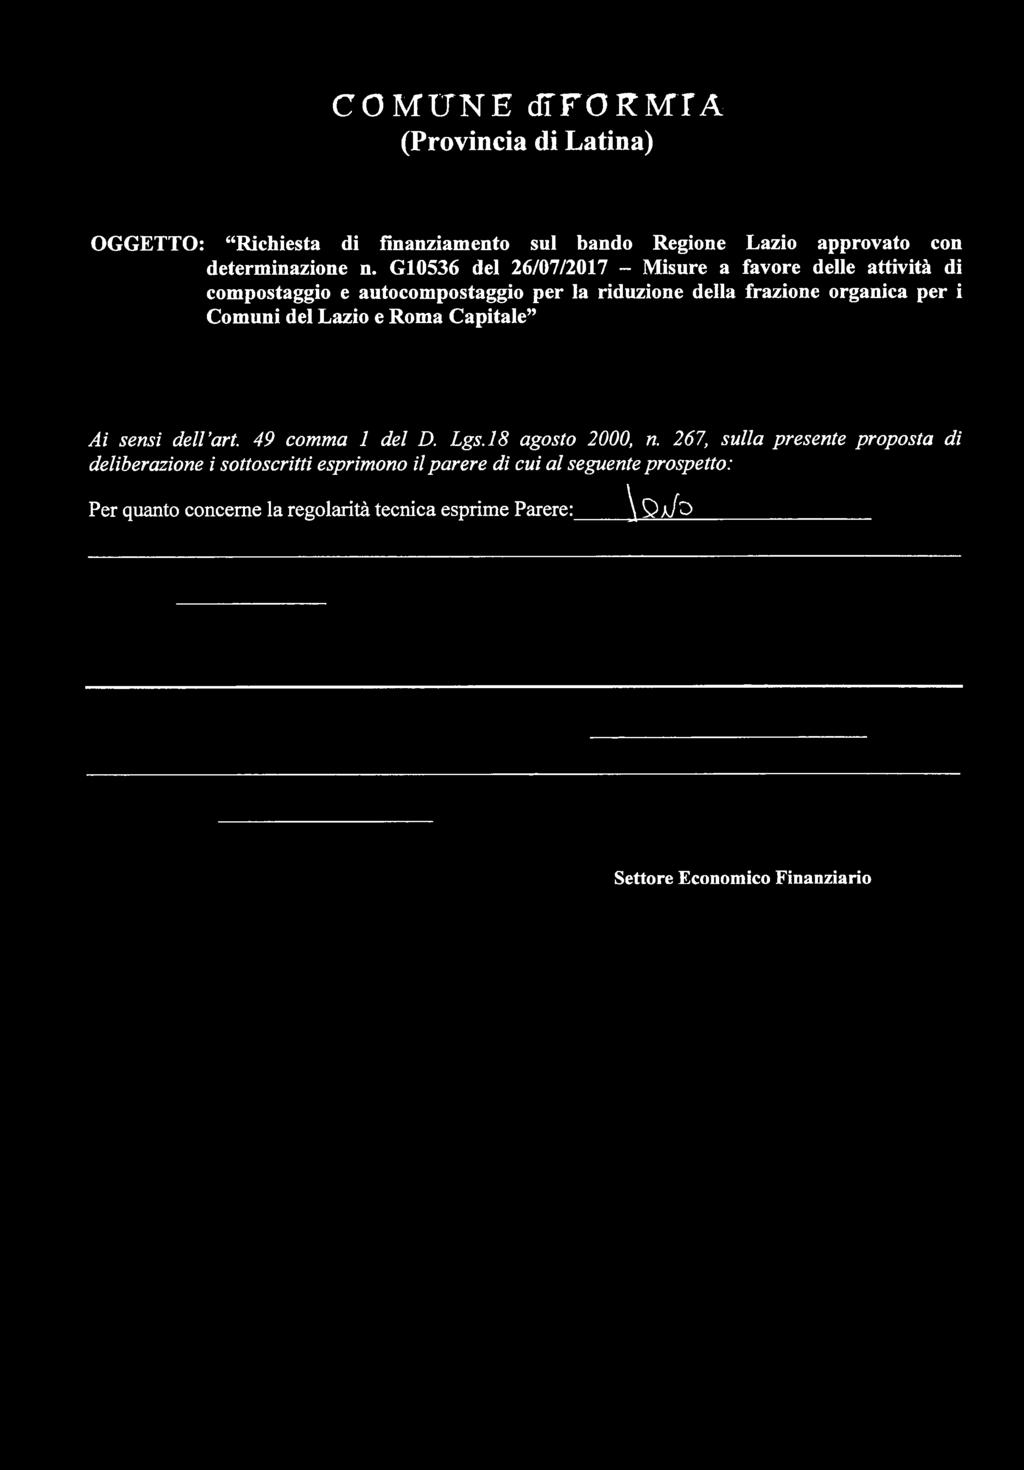 Comuni del Lazio e Roma Capitale Ai sensi dell art. 49 comma 1 del D. Lgs.18 agosto 2000, n.